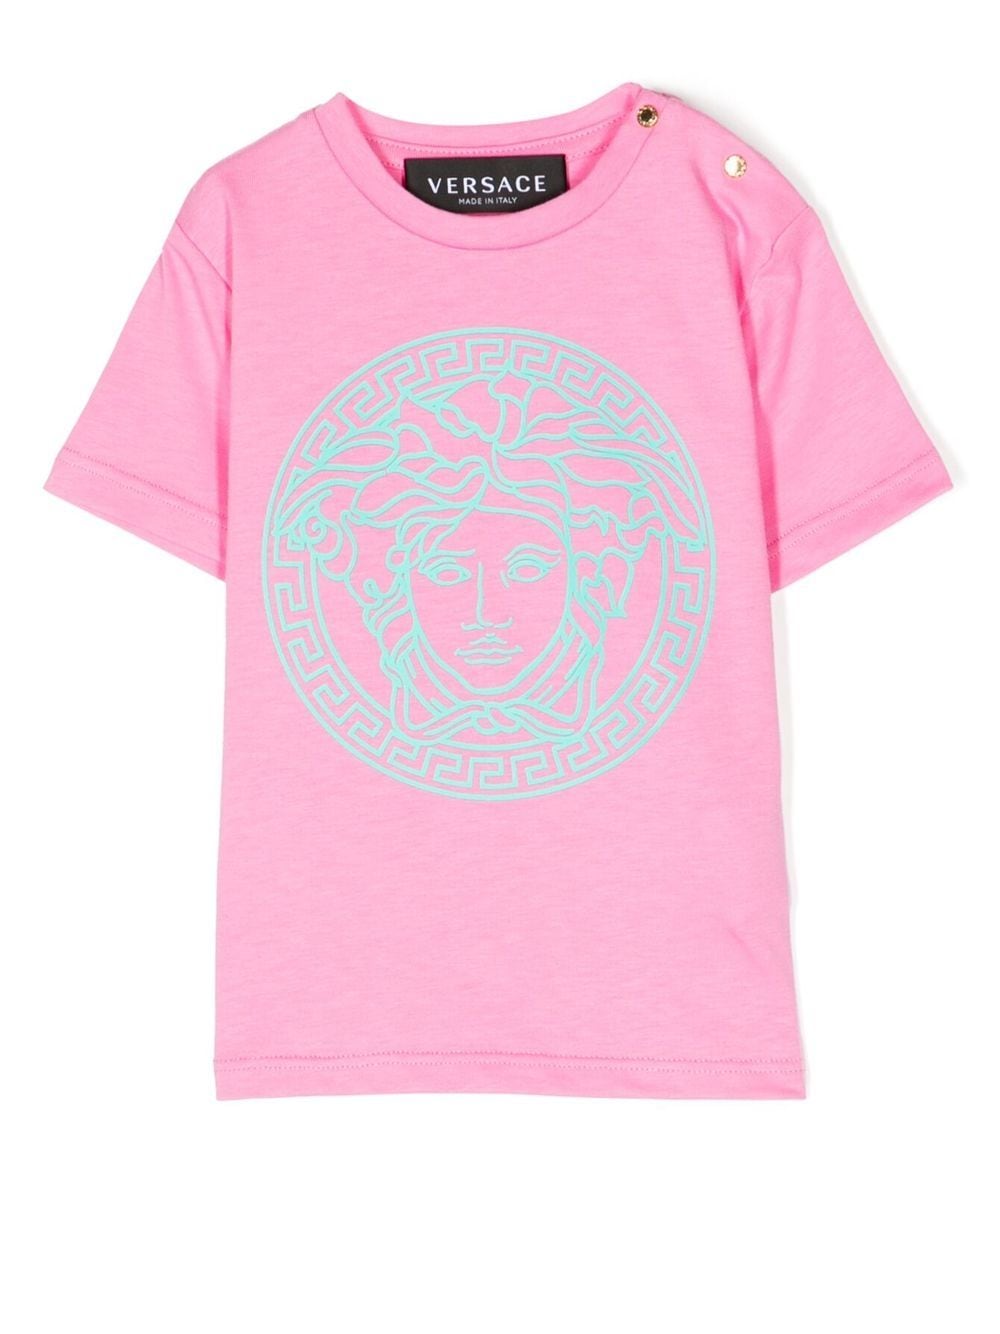 Versace Babies' Medusa Head 印花短袖t恤 In Pink